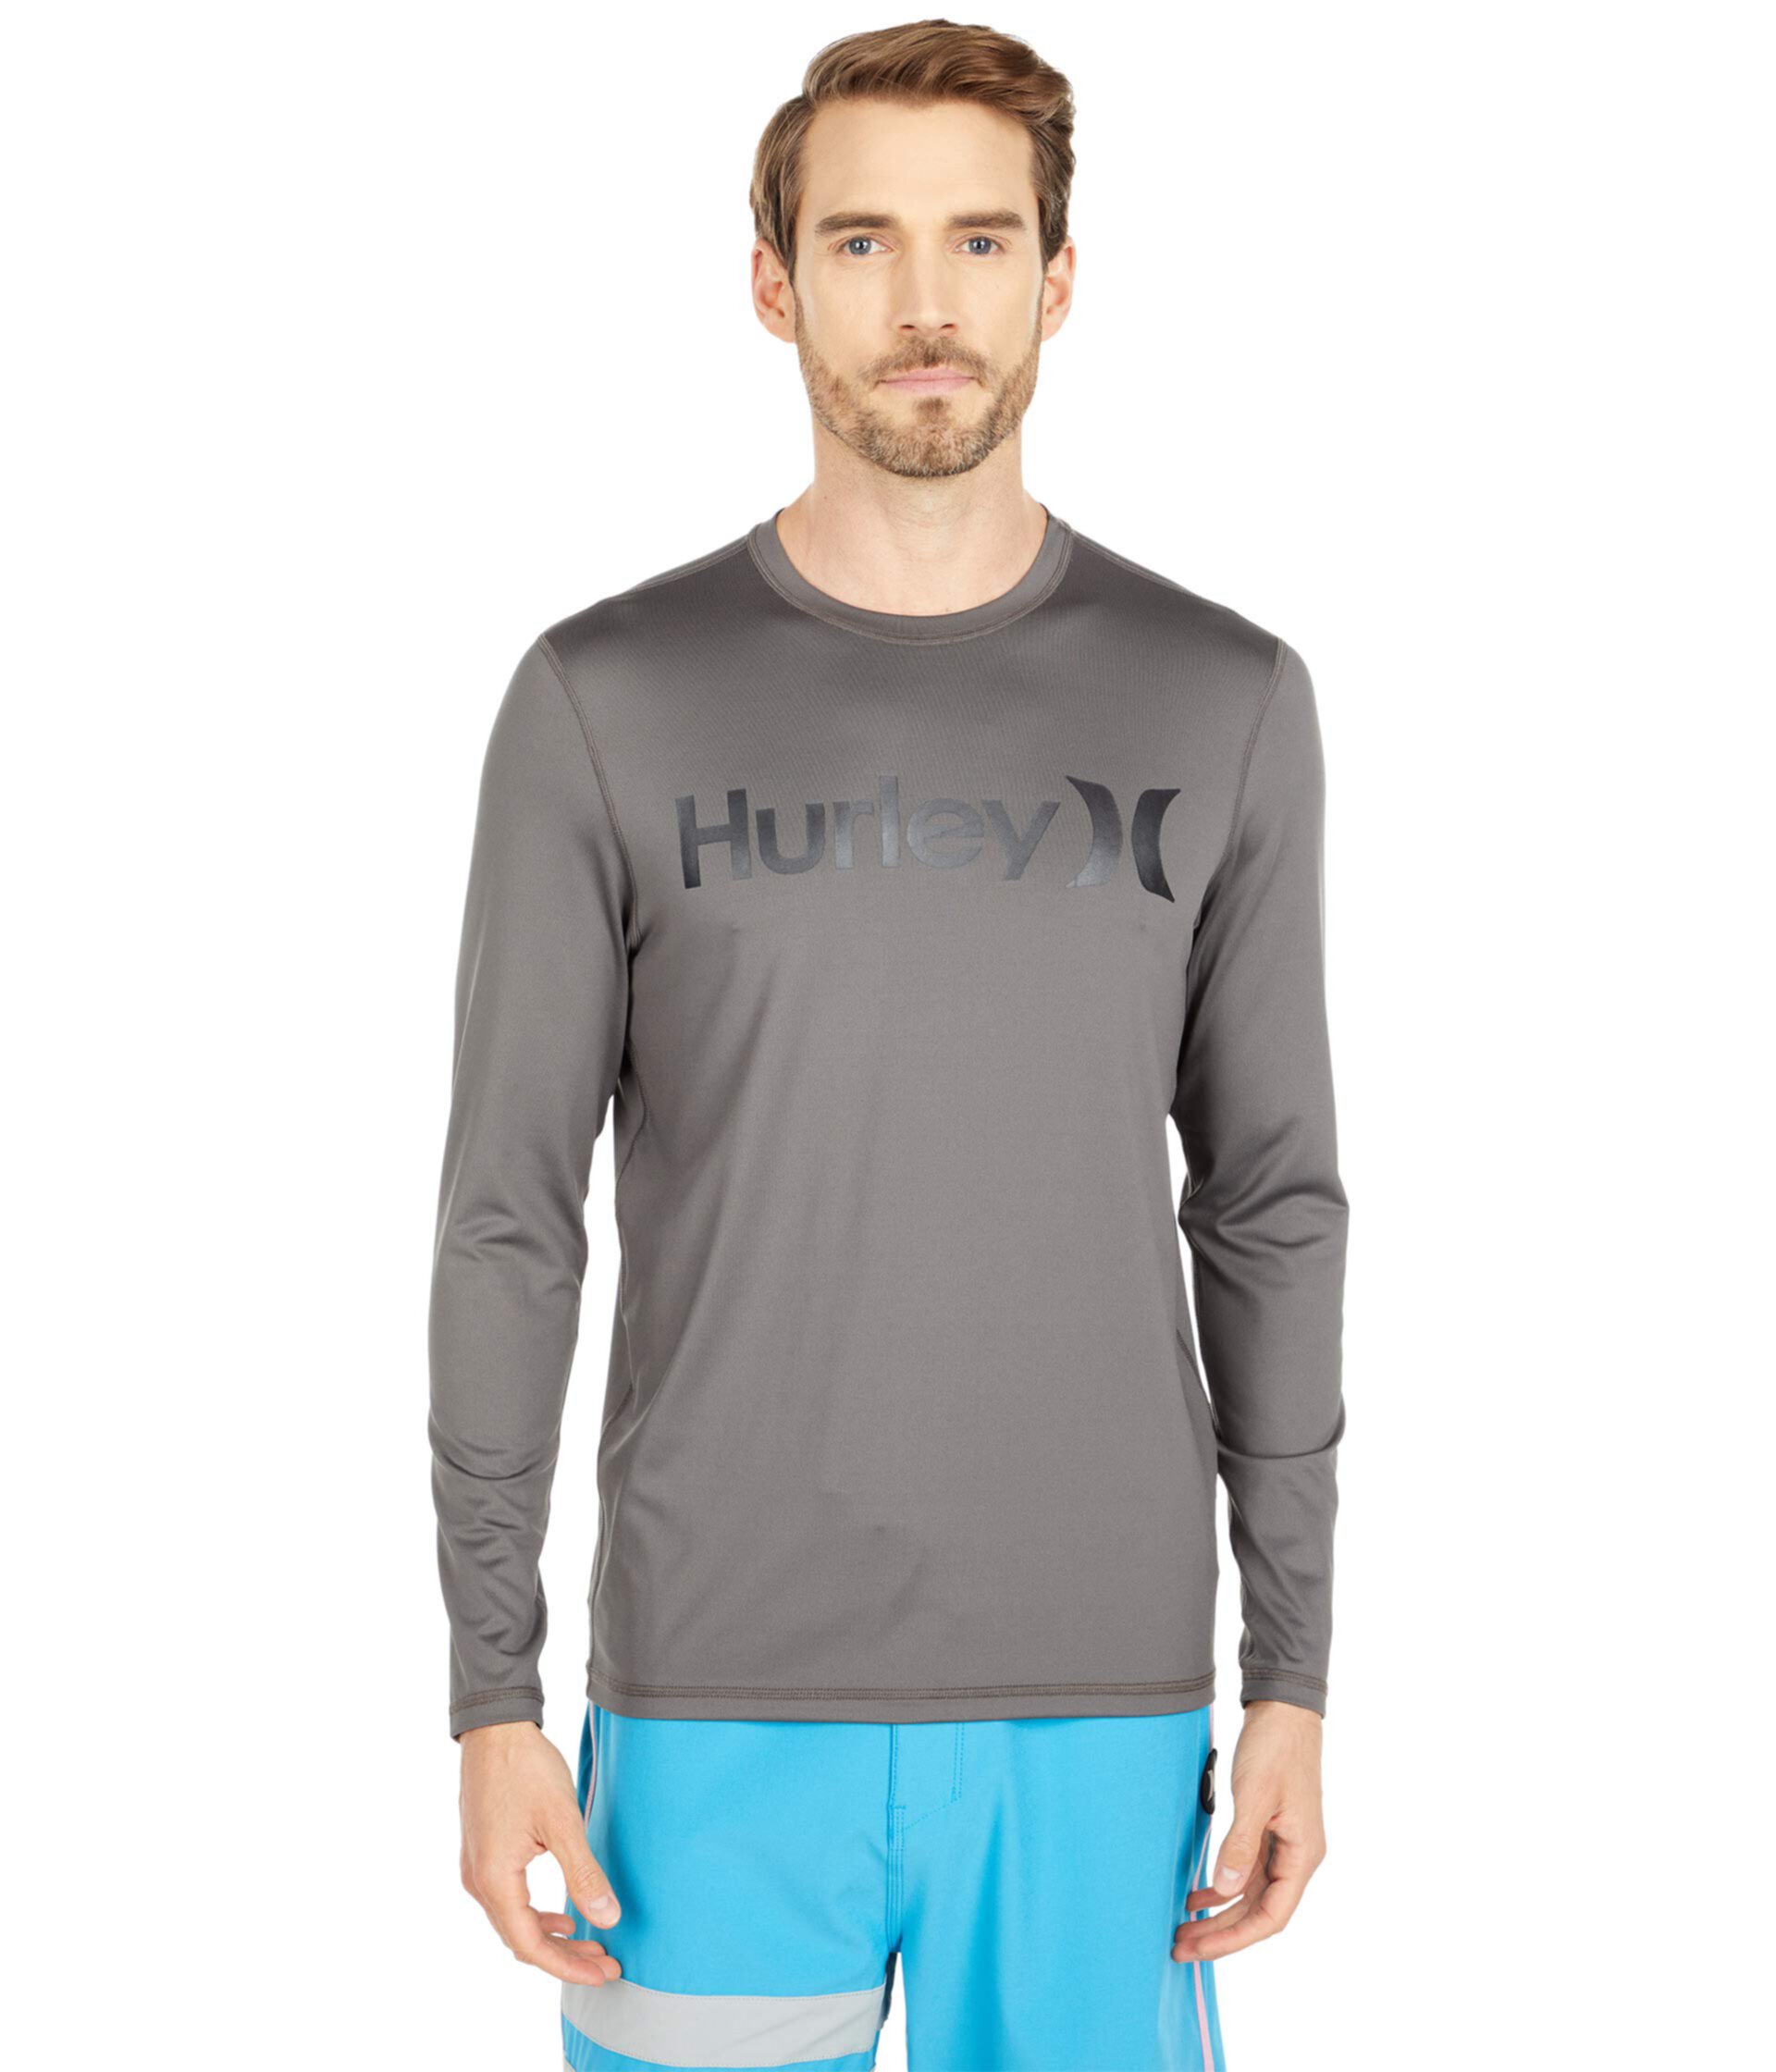 Рубашка для серфинга с длинным рукавом One & Only Hurley